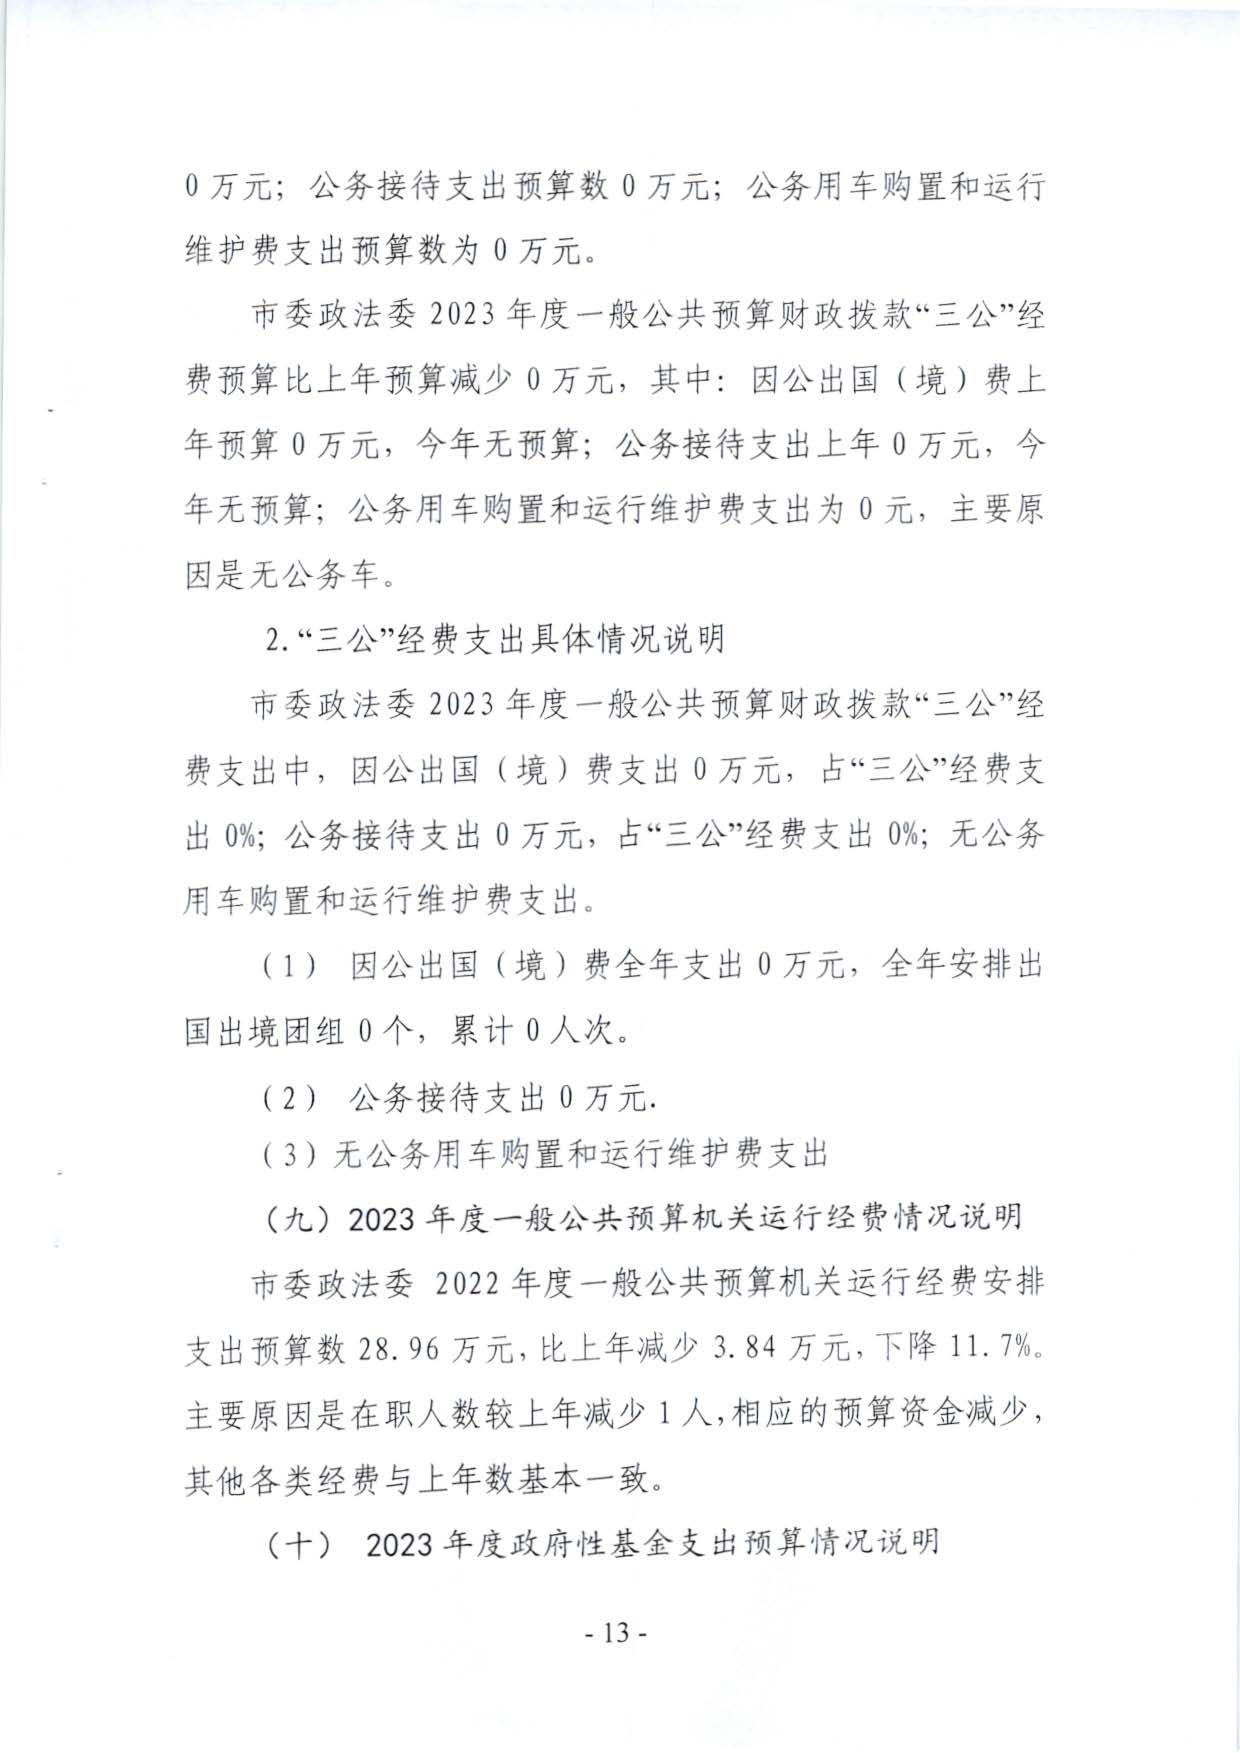 嘉峪关市委政法委2023年预算公开情况说明(1)_页面_13